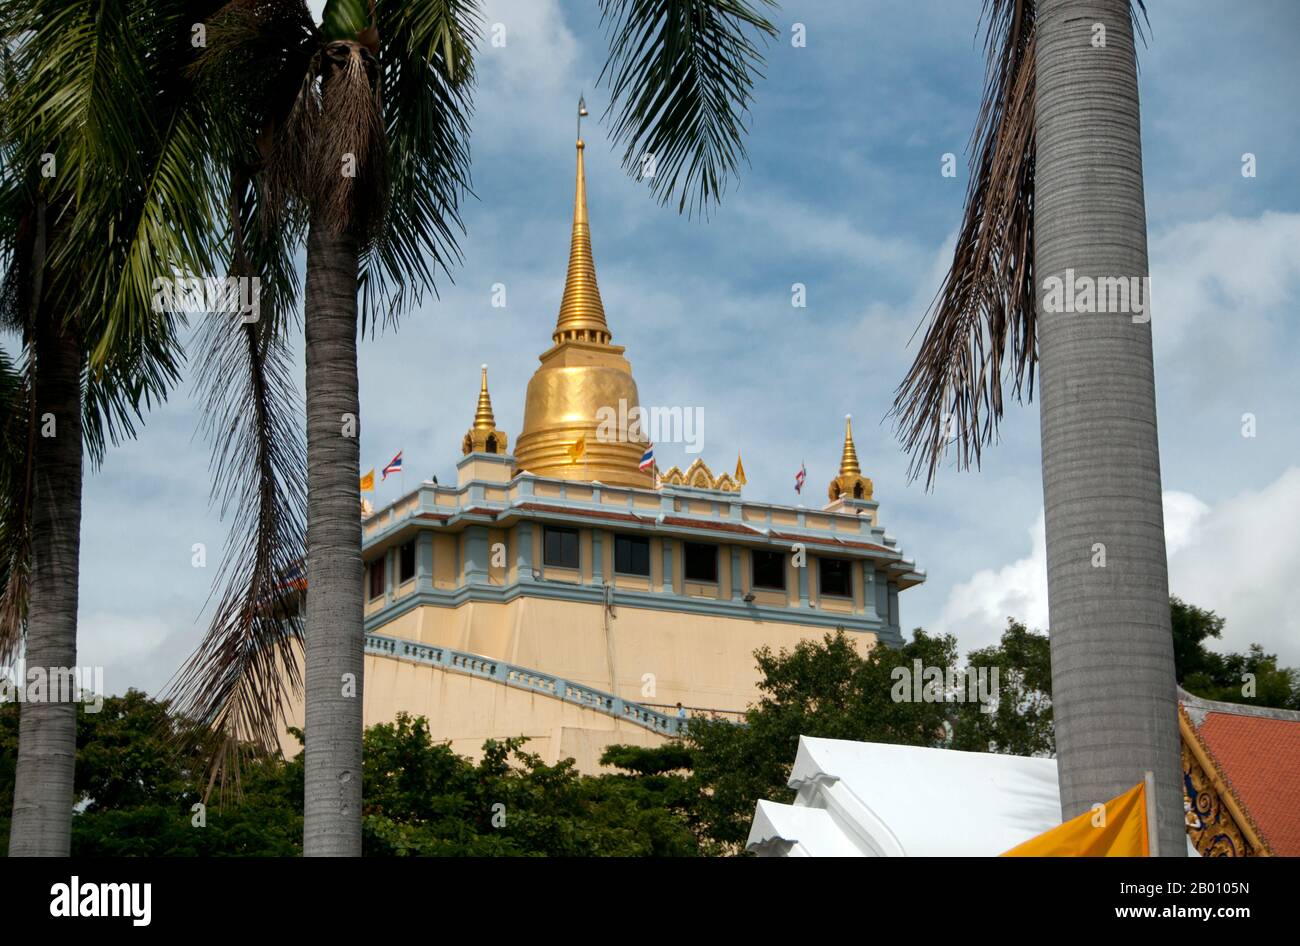 Thailand: Wat Saket und der Goldene Berg, Bangkok. Wat Saket Ratcha Wora Maha Wihan (gewöhnlich Wat Saket) stammt aus der Ayutthaya-Ära, als er Wat Sakae genannt wurde. König Rama I (1736 - 1809) oder Buddha Yodfa Chulaloke hat den Tempel renoviert und ihn in Wat Saket umbenannt. Der Goldene Berg (Phu Khao Thong) ist ein steiler Hügel innerhalb des Wat Saket-Geländes. Es handelt sich nicht um einen natürlichen Aufschluss, sondern um einen künstlichen Hügel, der unter der Herrschaft von Rama III (1787 - 1851) oder König Jessadabodindra errichtet wurde. Stockfoto